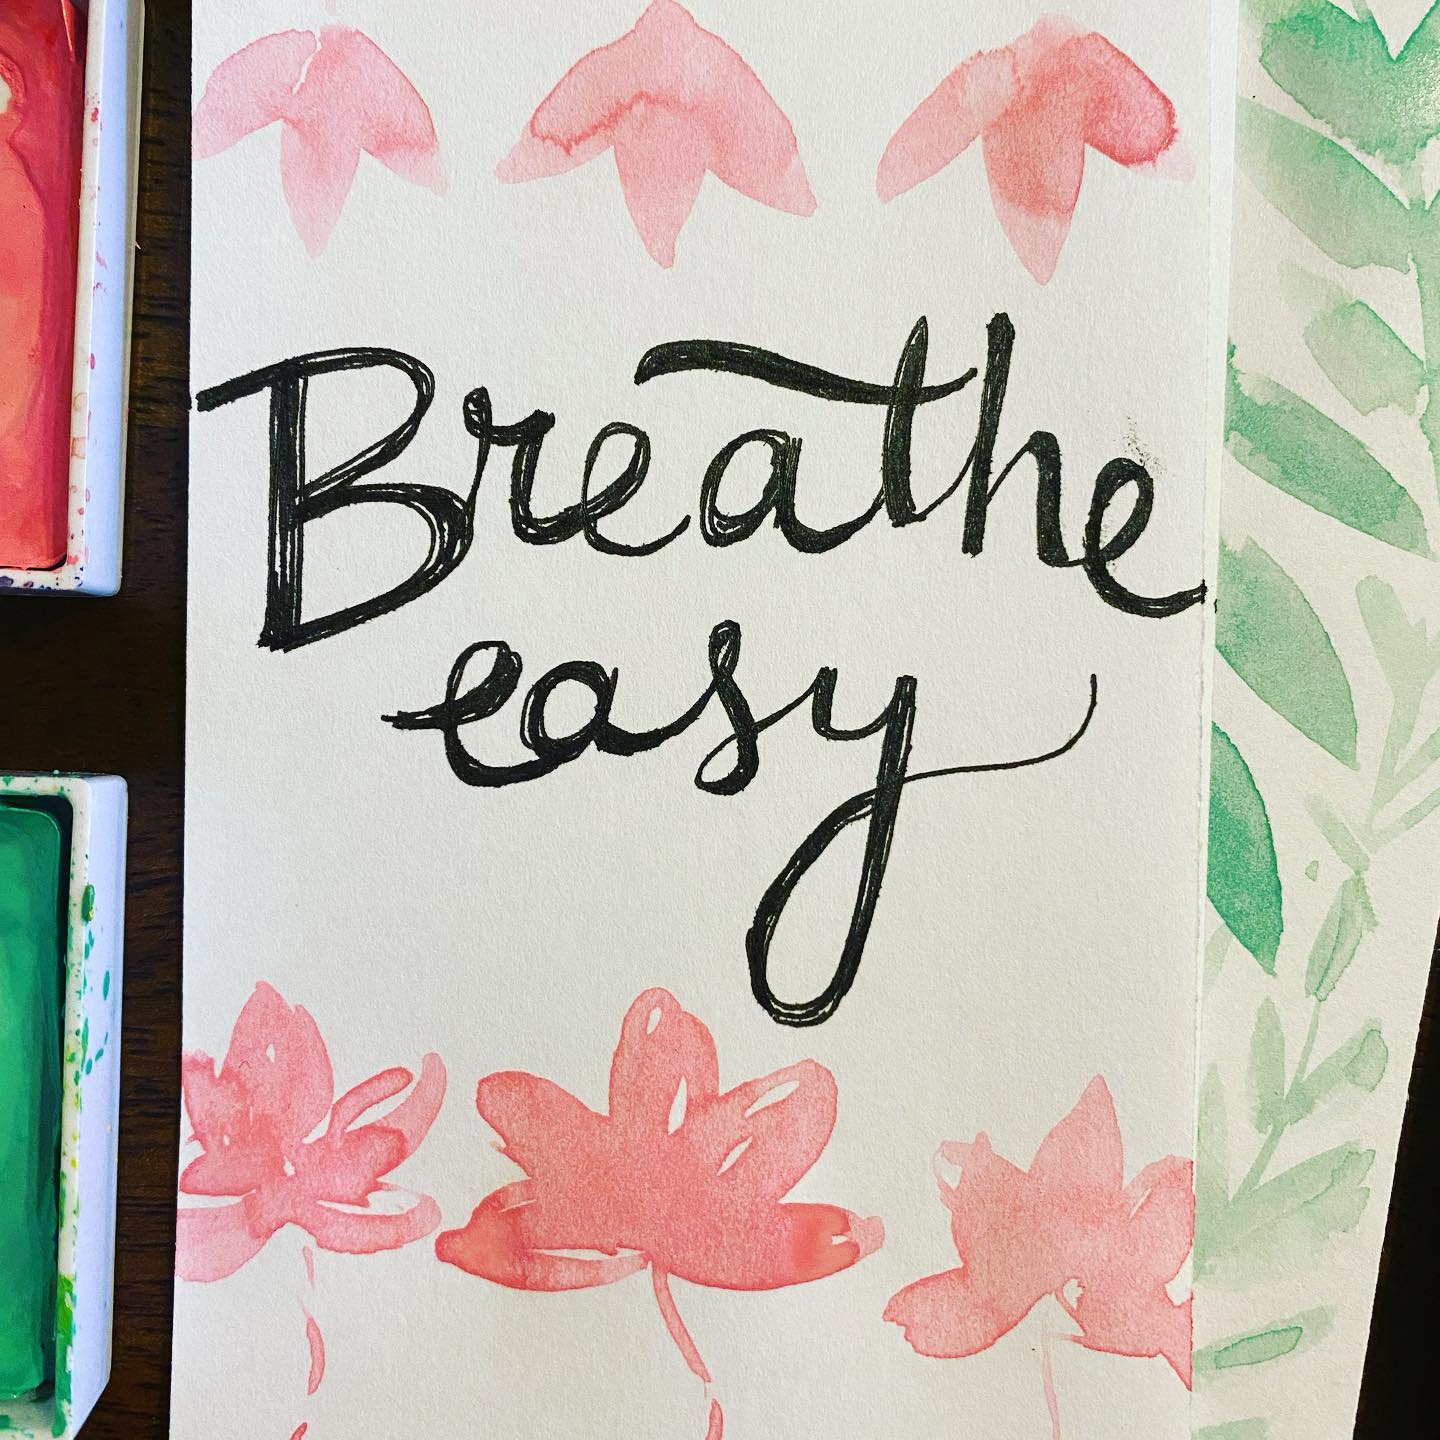 Breathe easy